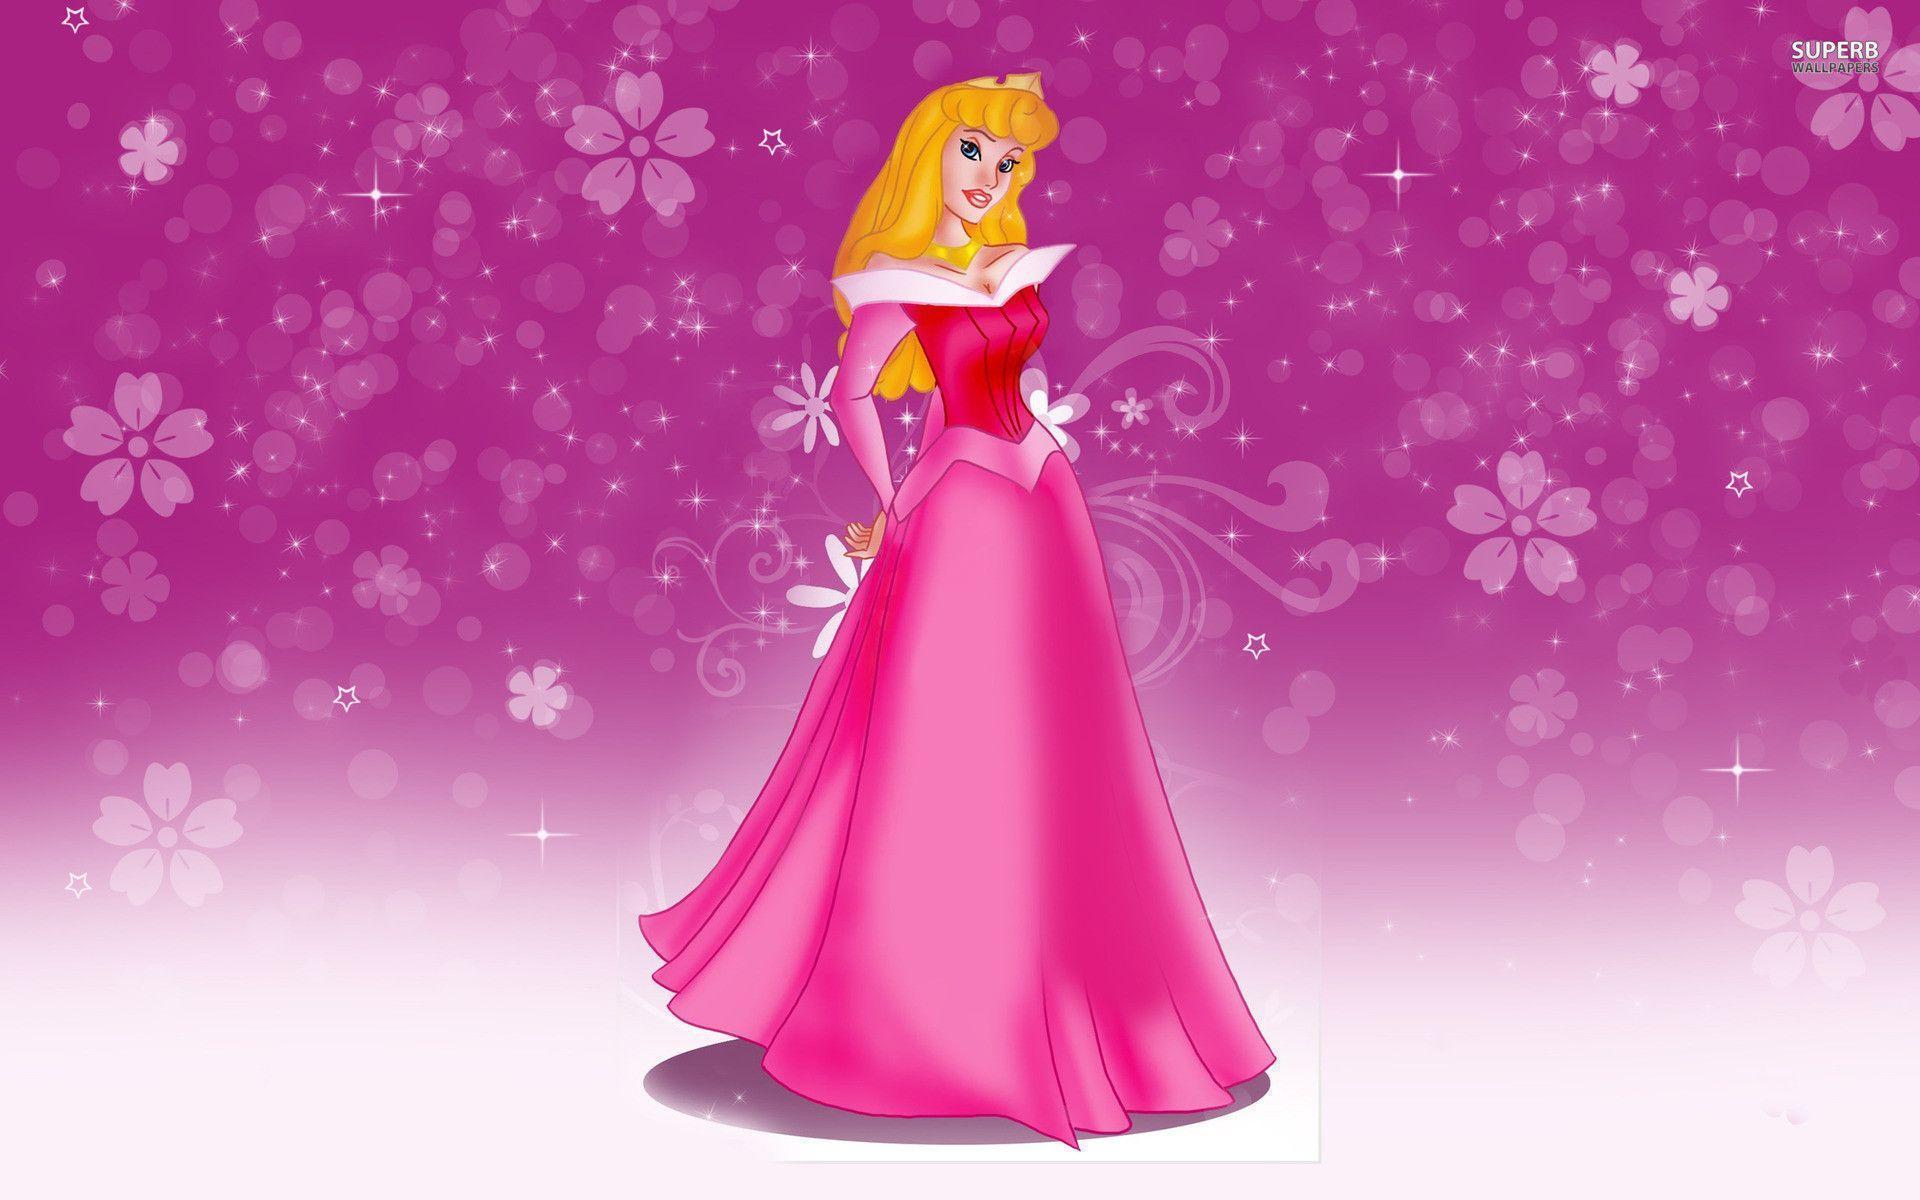 Princess Aurora Beauty wallpaper wallpaper - #